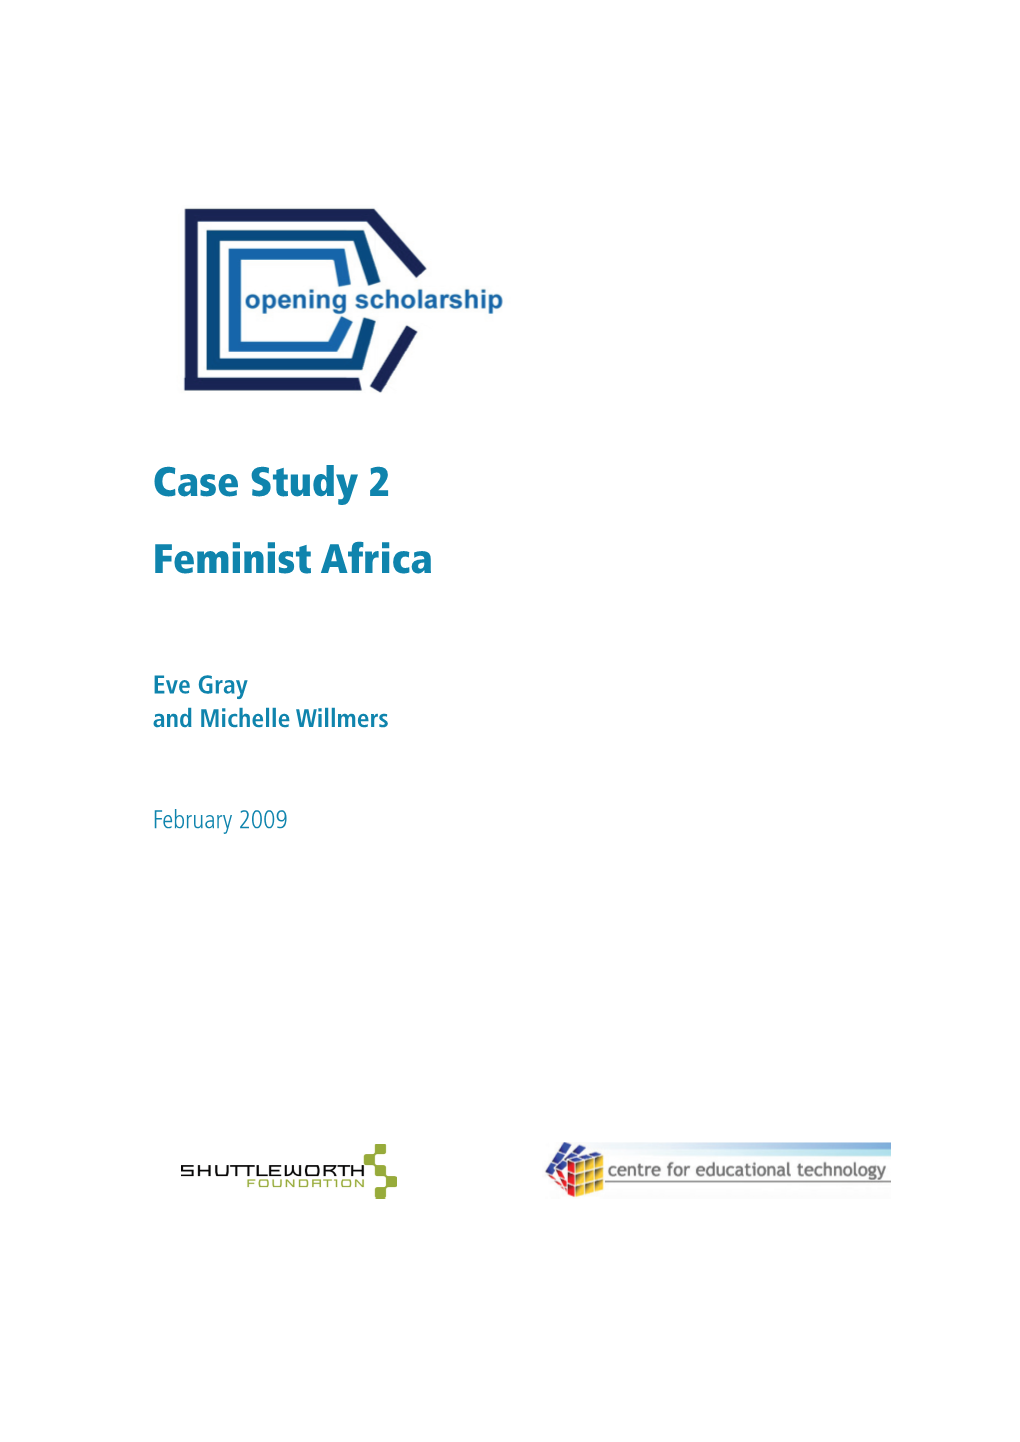 Case Study 2 Feminist Africa